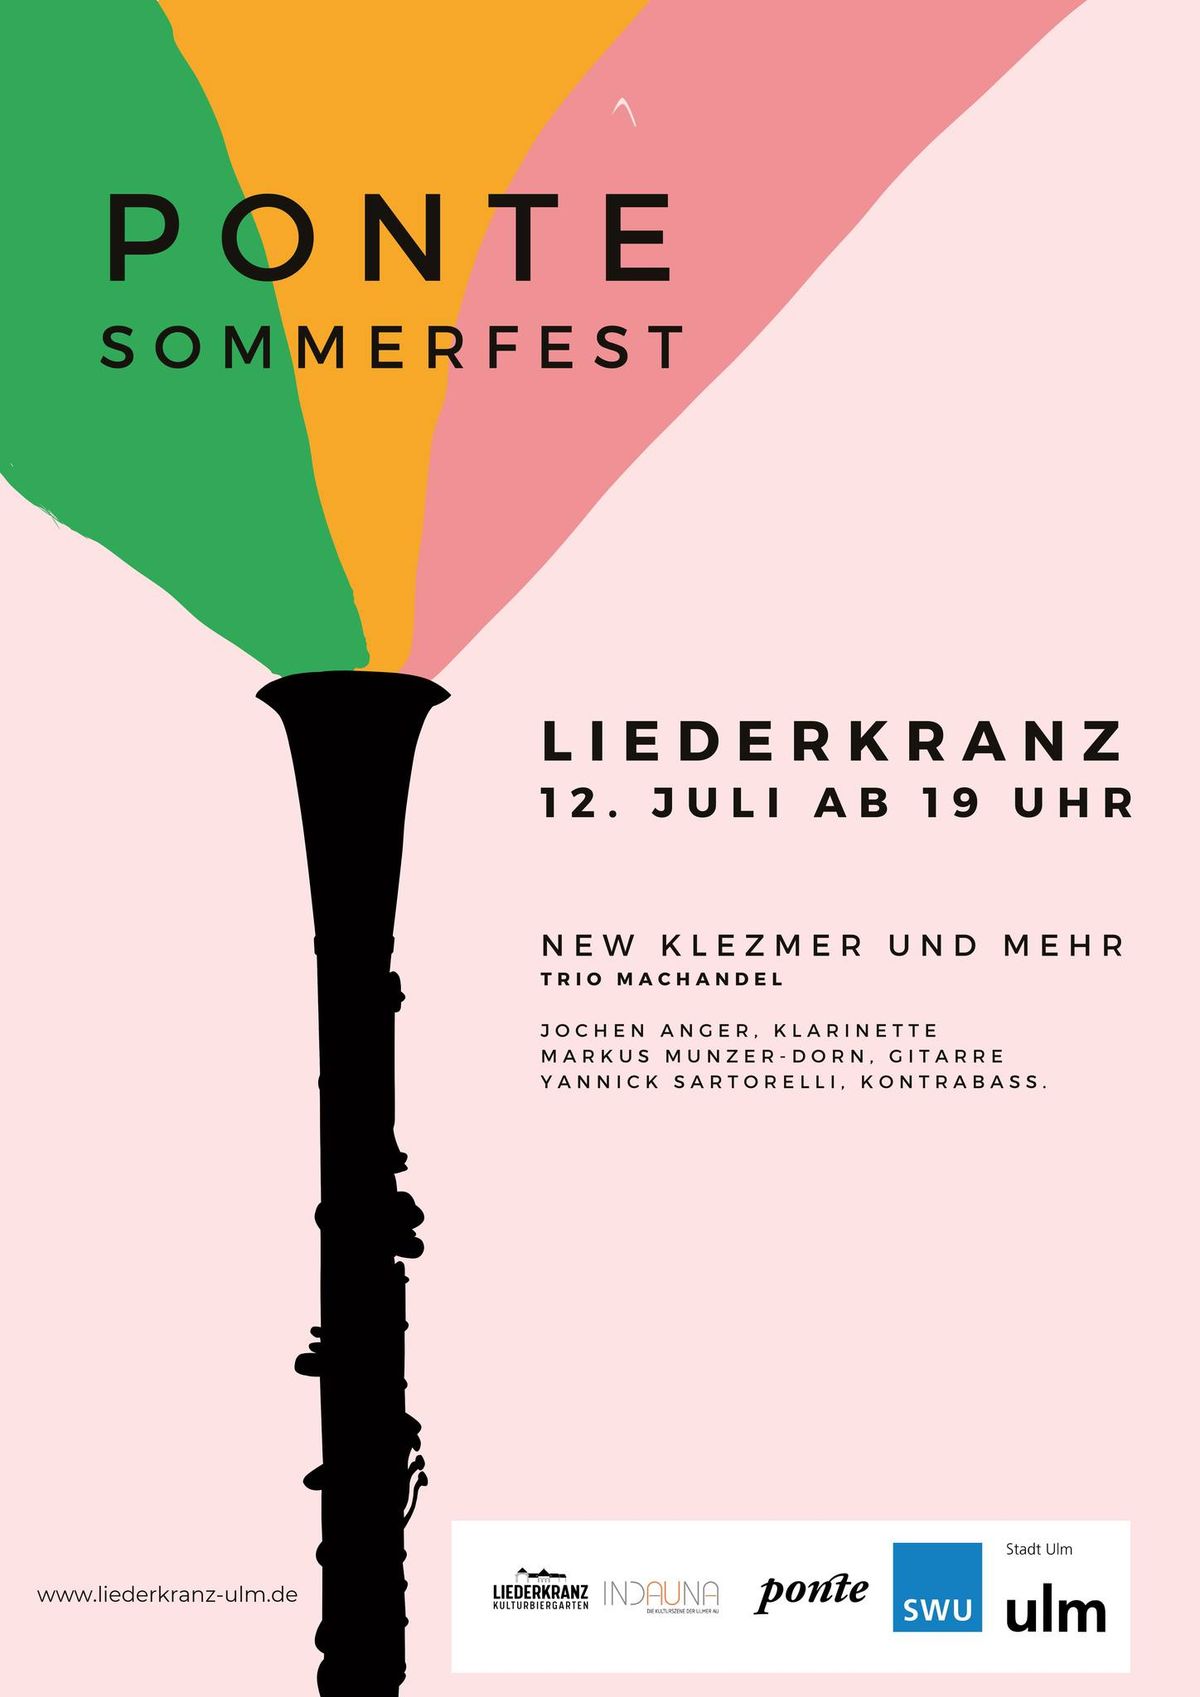 Ponte Sommerfest - New Klezmer und mehr! 